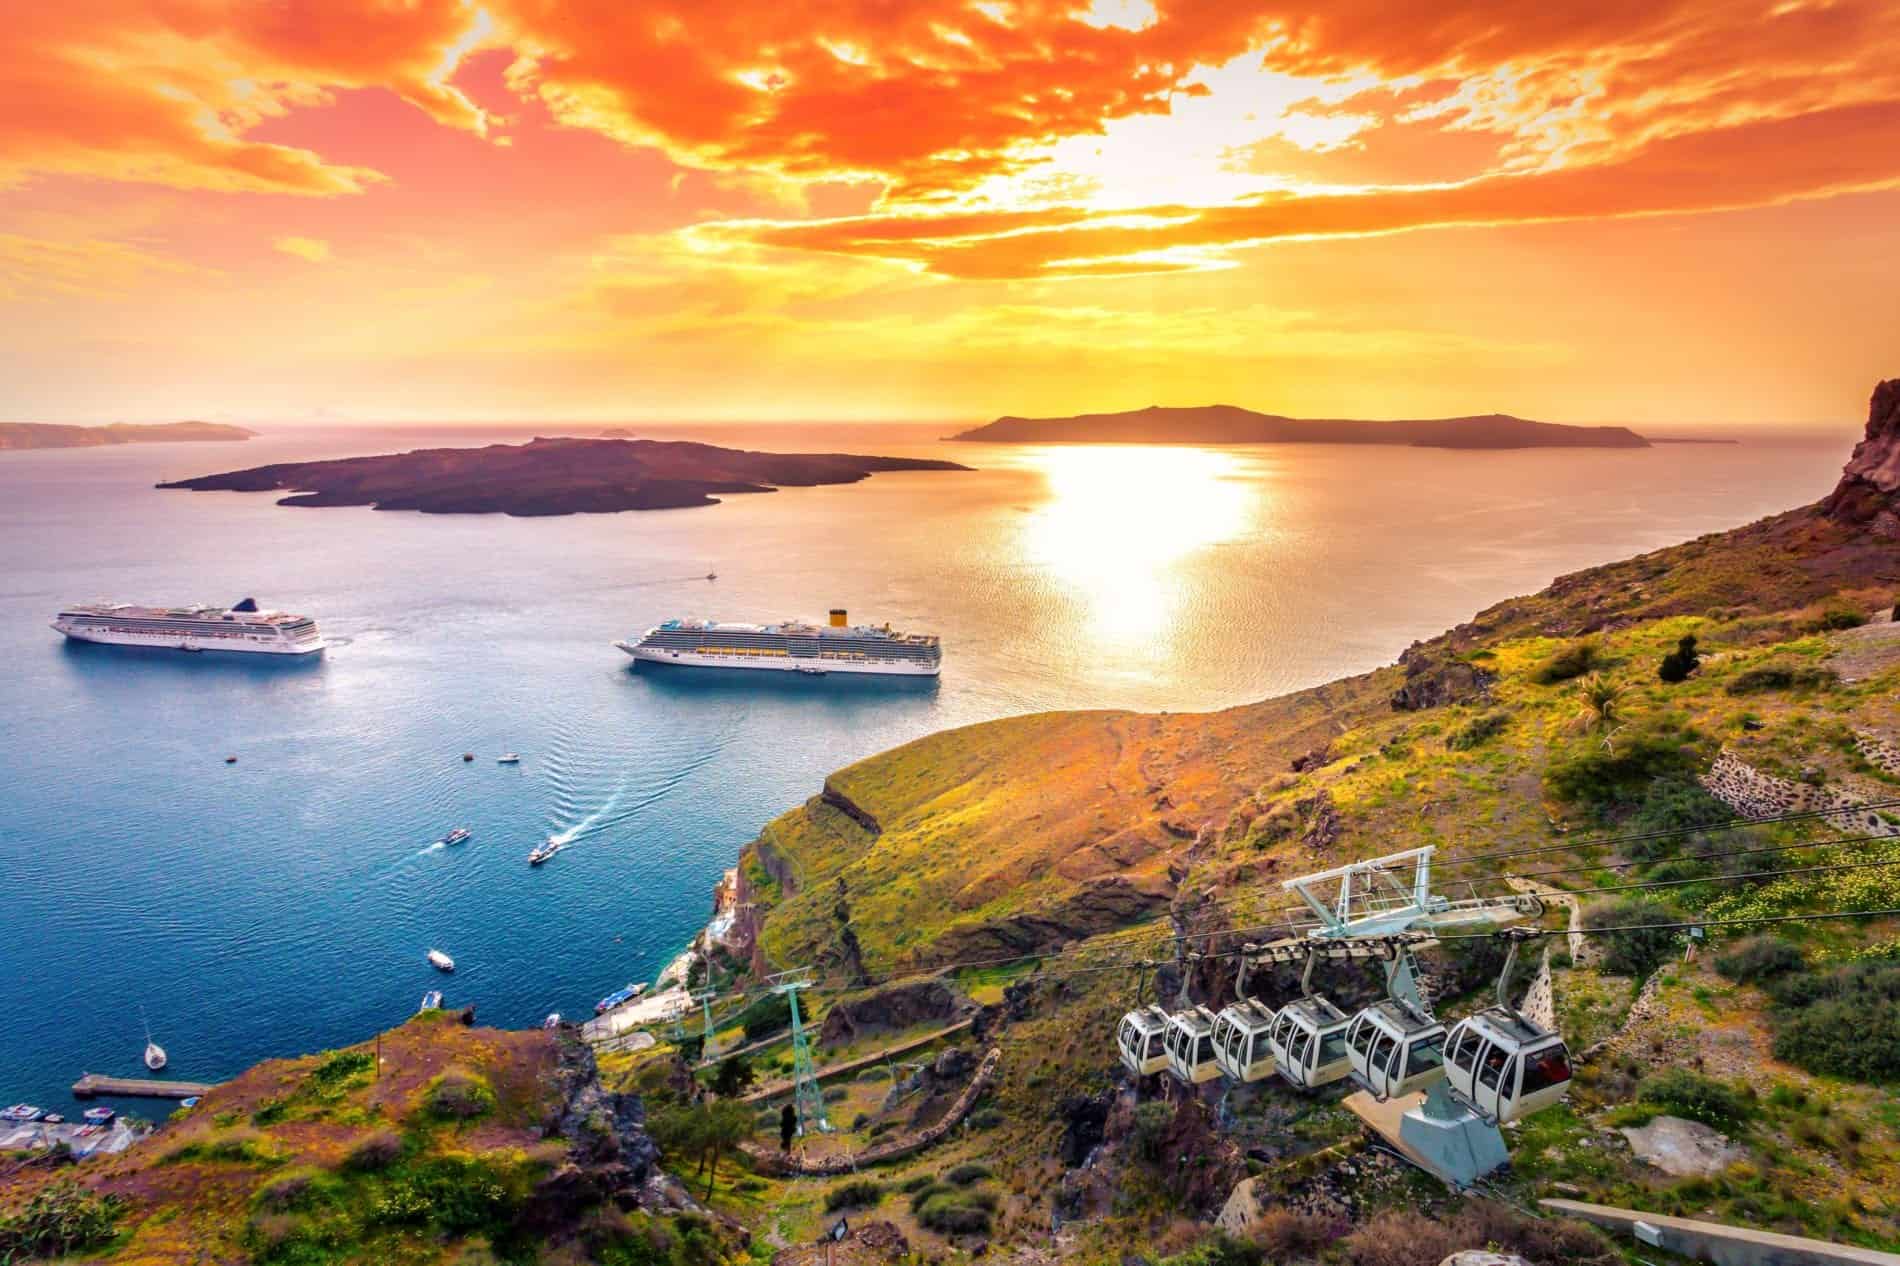 Greek cruise holidays